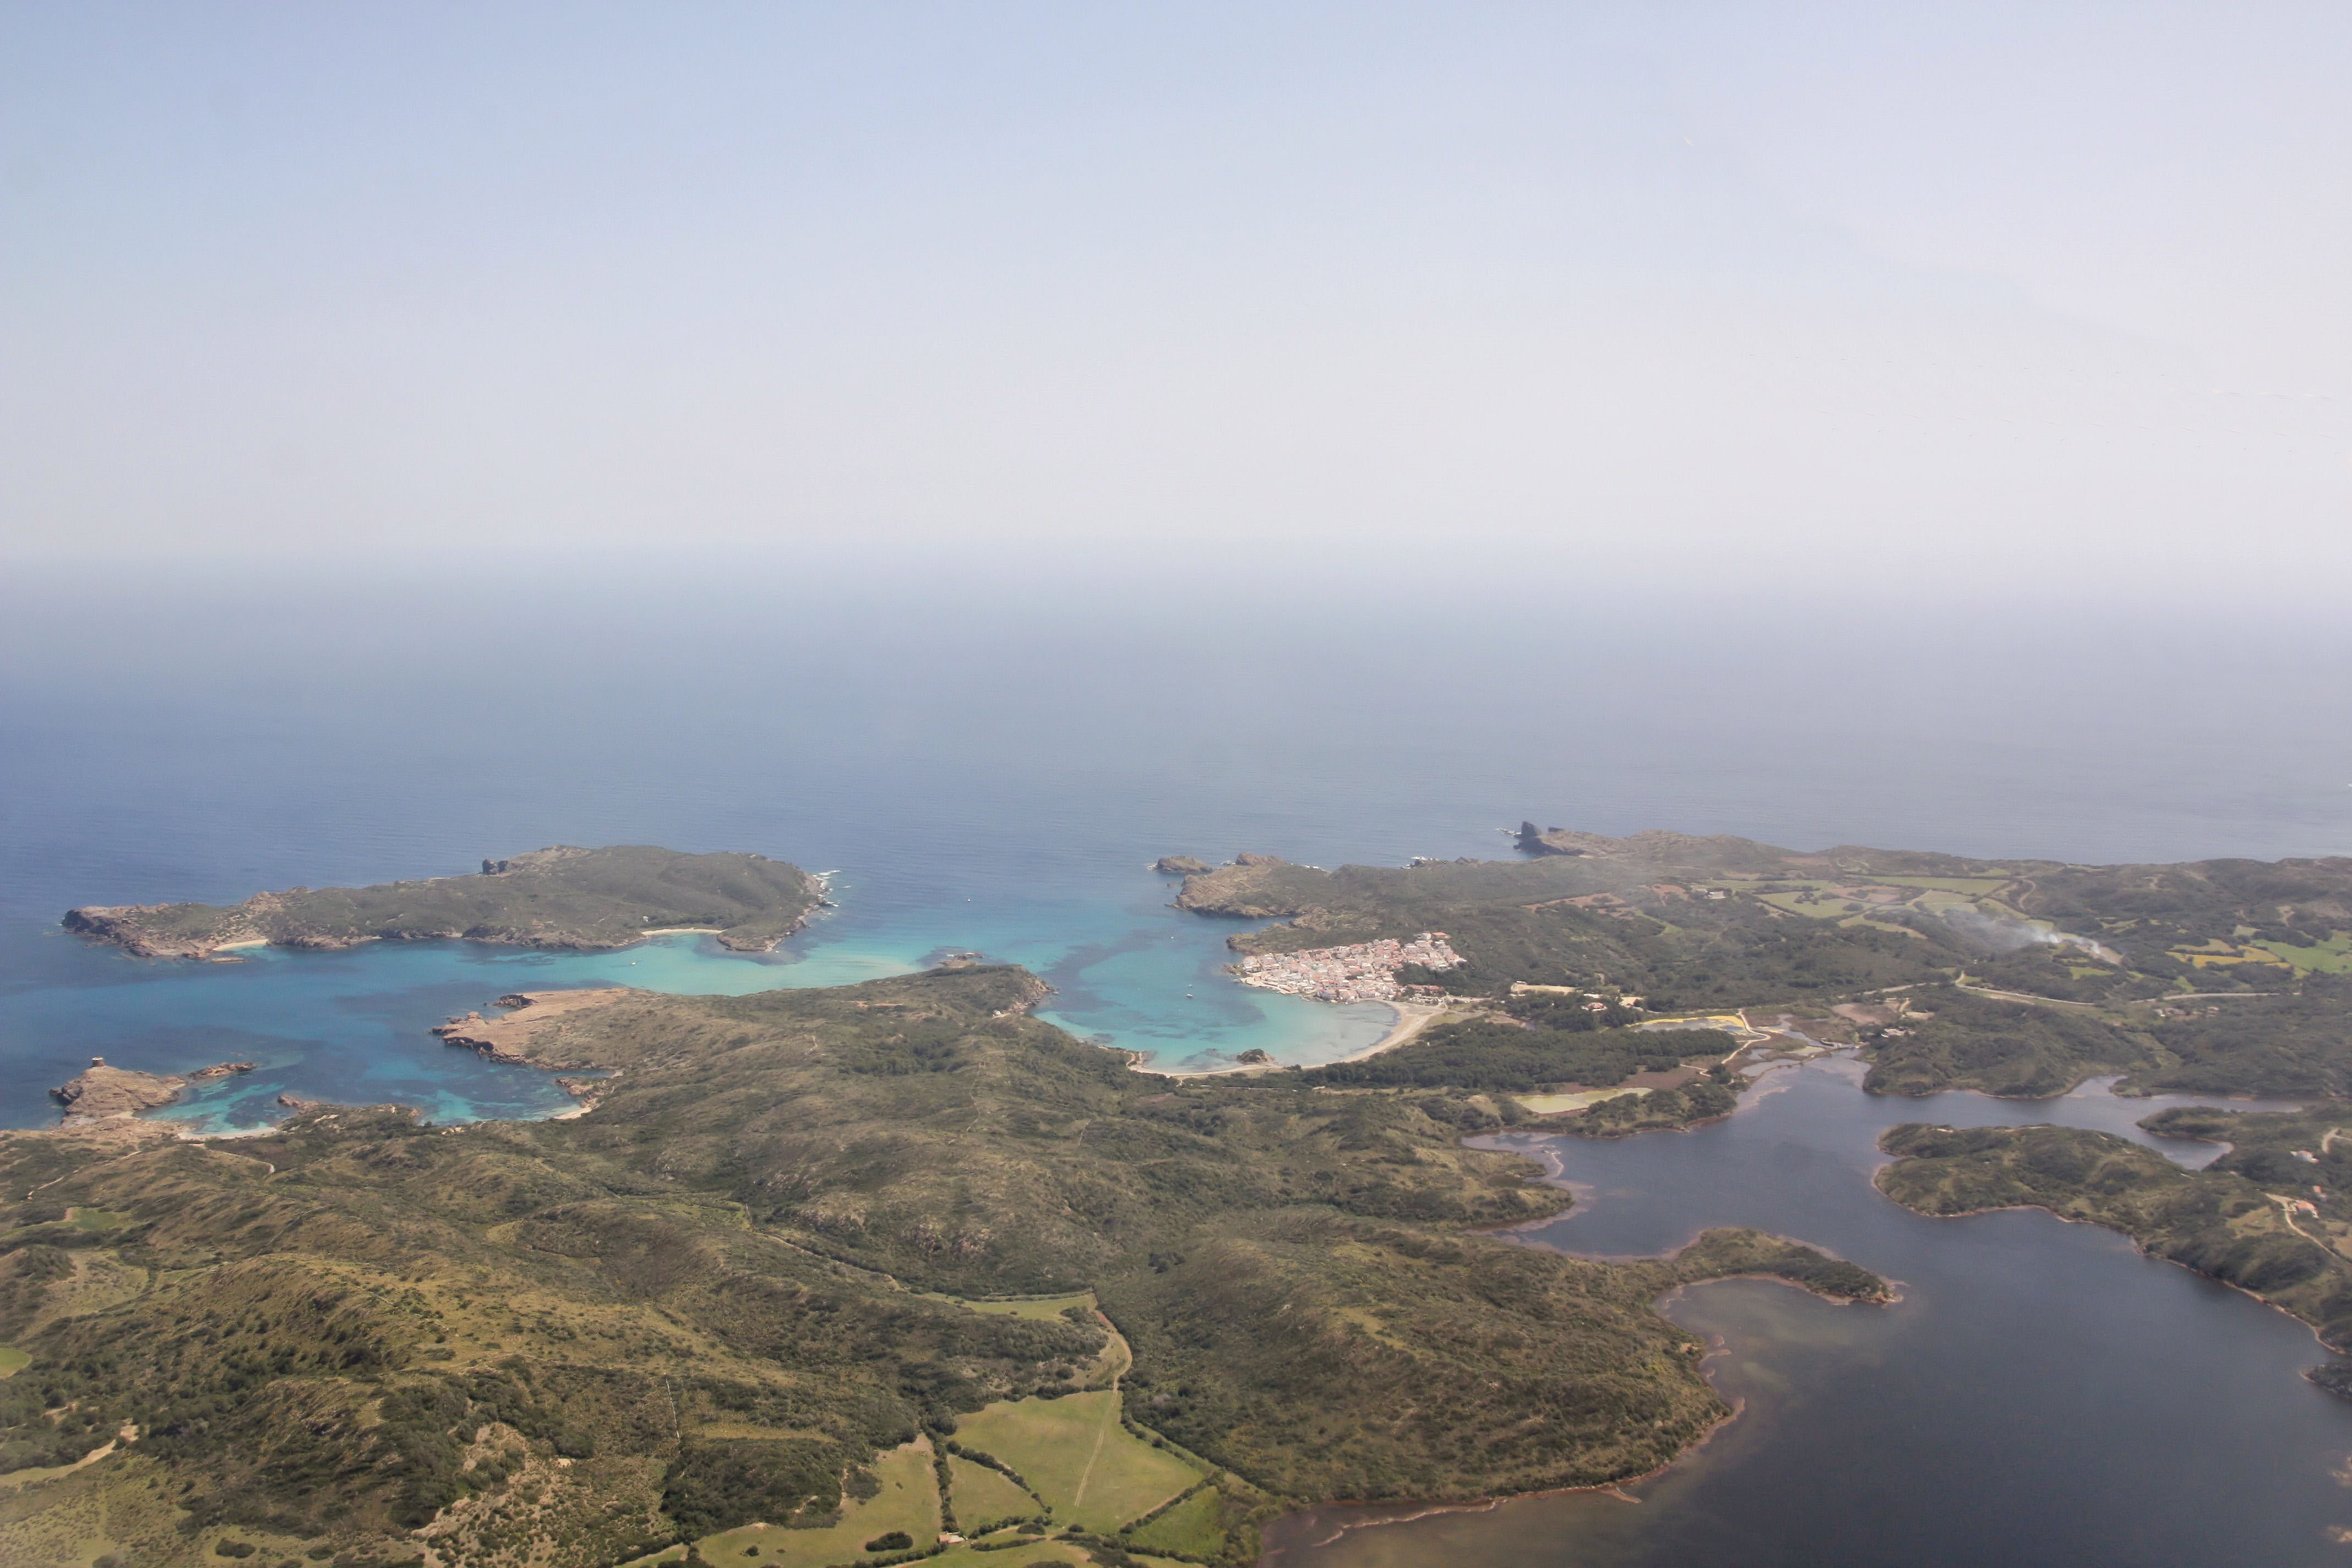 Parque Natural de Es Grau en Menorca. Ruta de 7 días en barco por Menorca